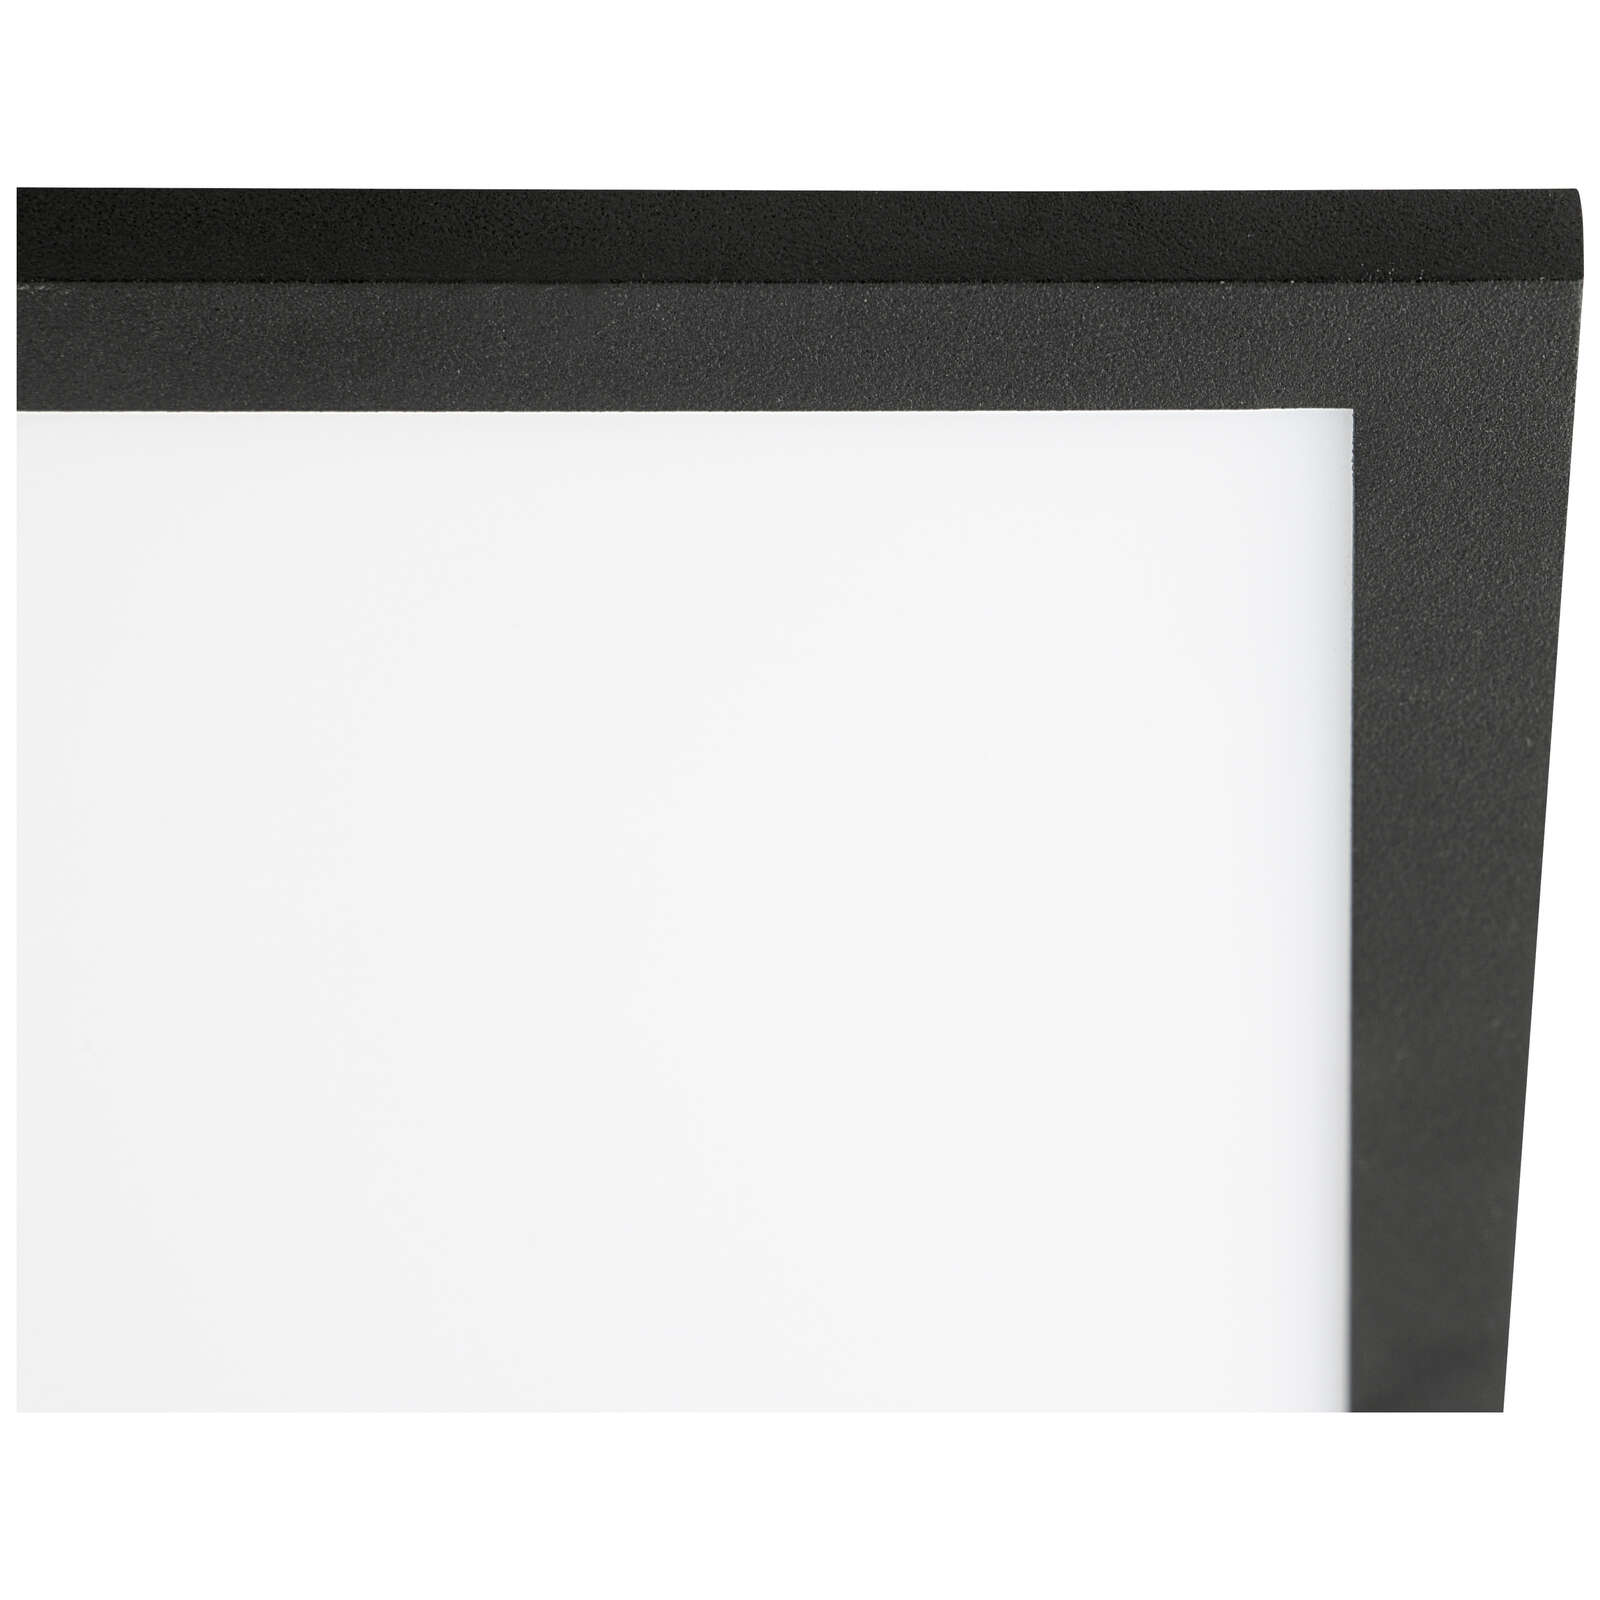             Plastic ceiling light - Constantin 2 - Black
        